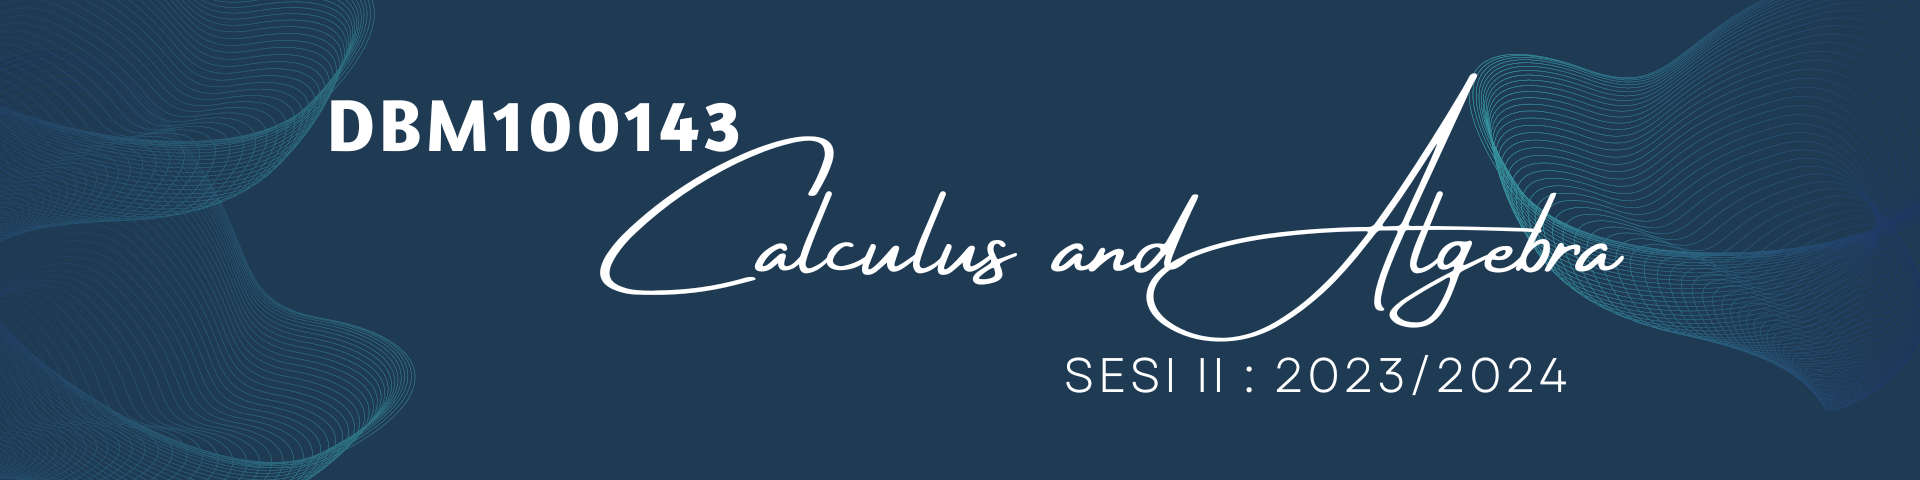 CALCULUS AND ALGEBRA